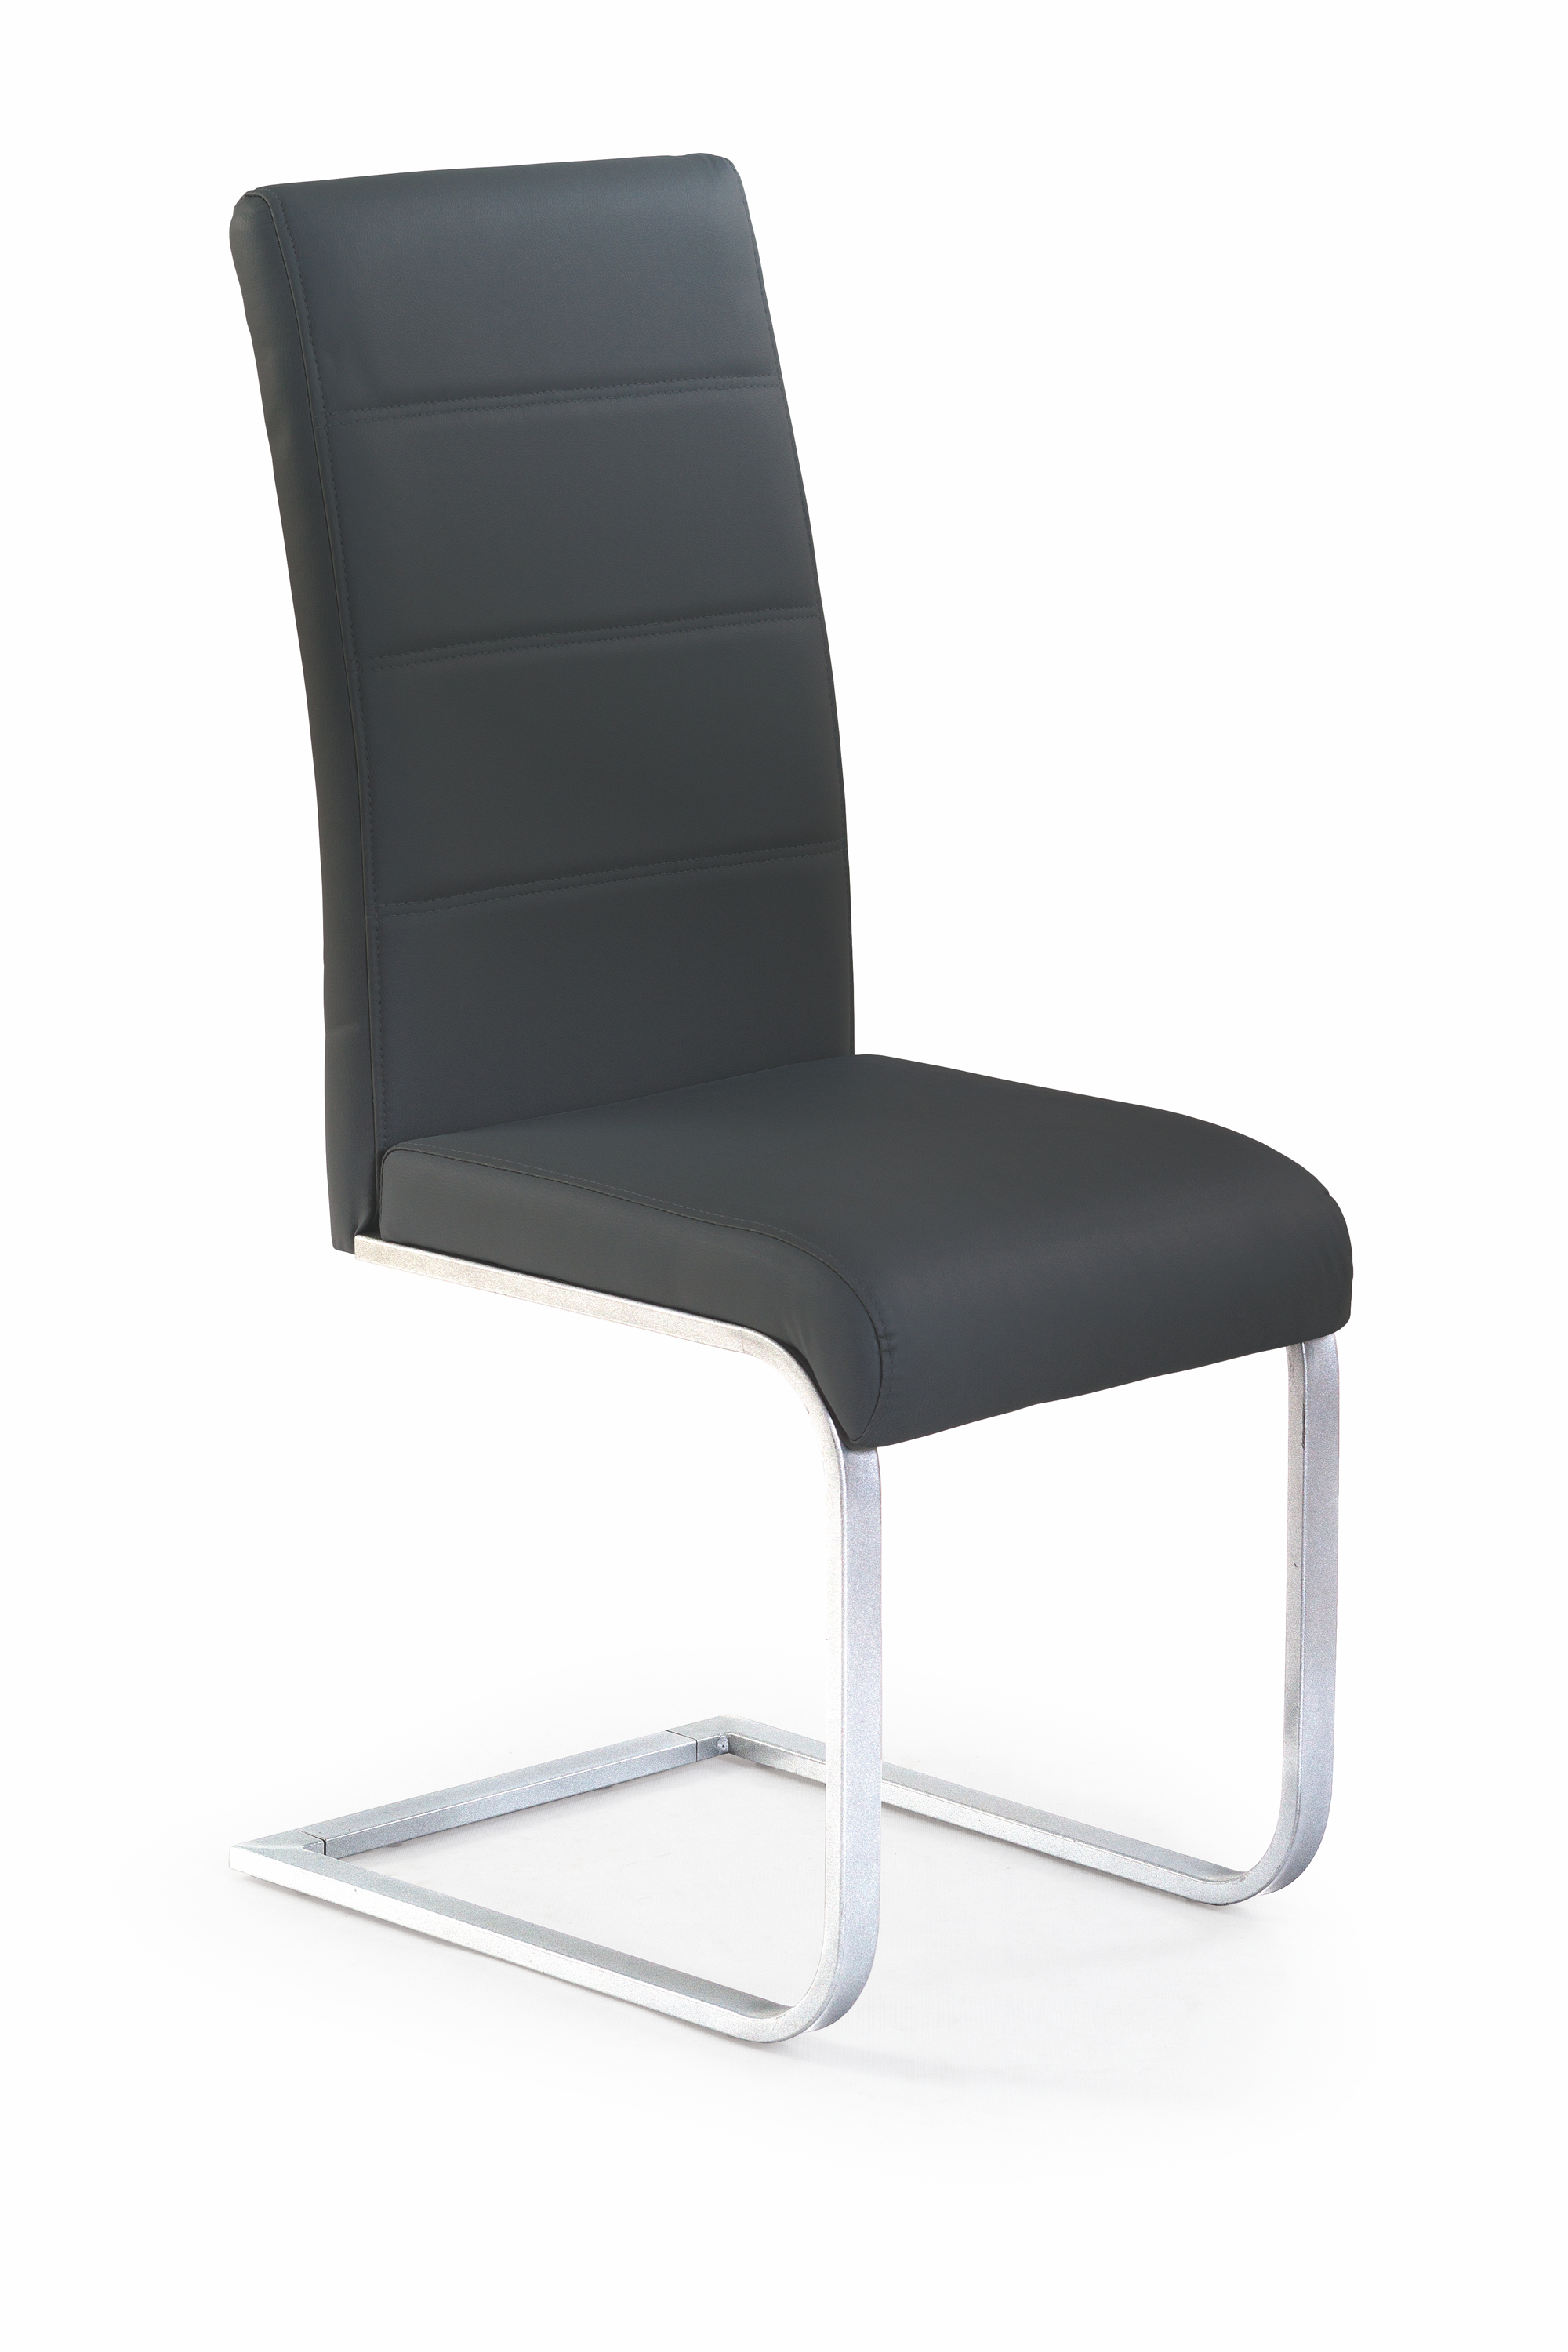 Židle BARI (černá)